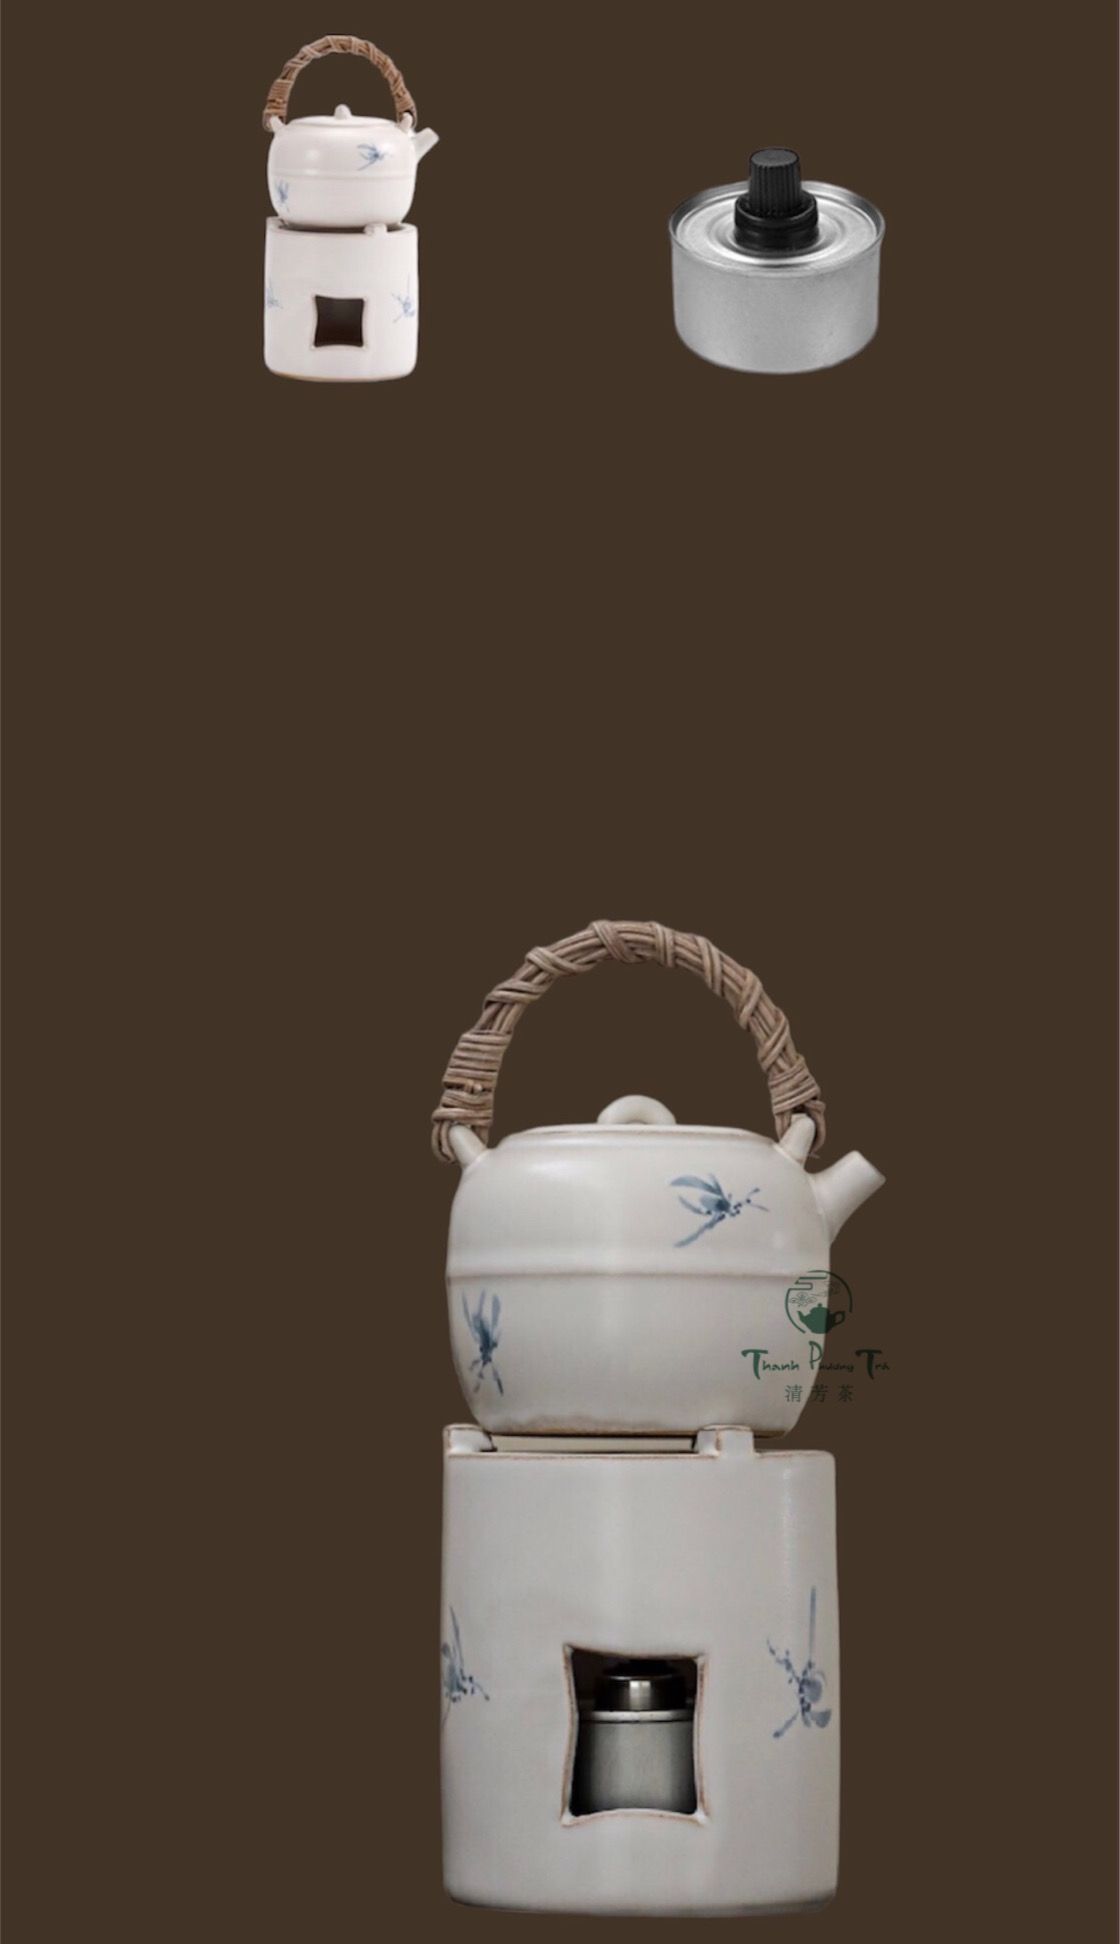  Bộ ấm & bếp lò đun/hâm nóng gốm trắng mini Hồ Điệp Lan Hoa vẽ tay 